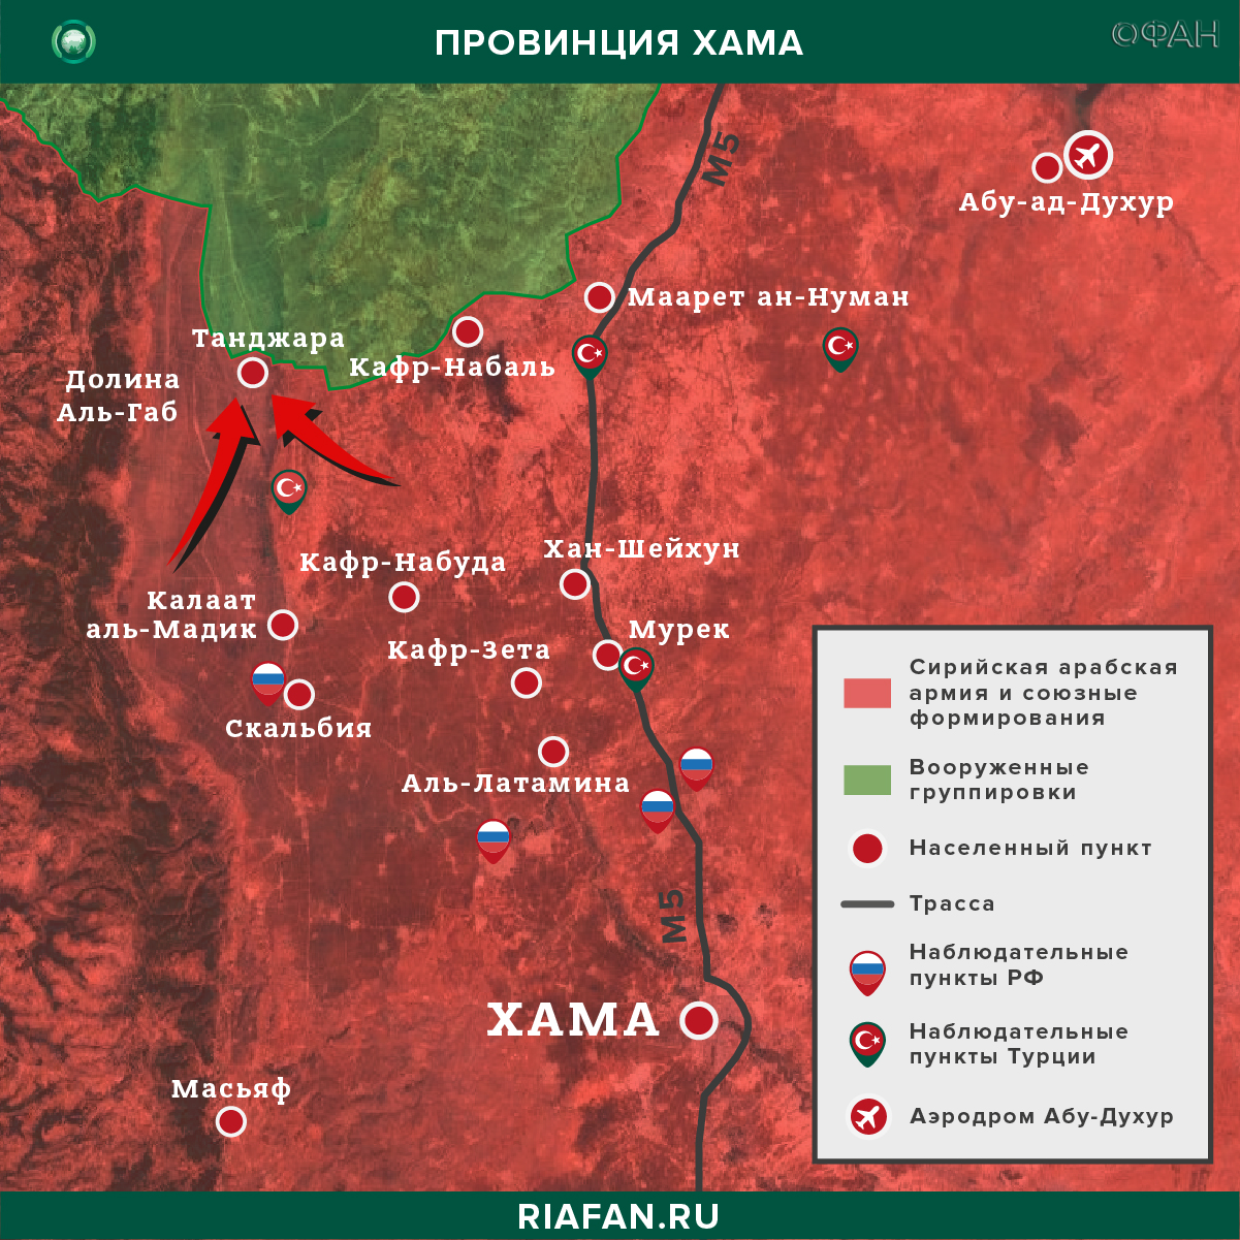 Сирийская армия восстановила контроль над населенным пунктом Танджара